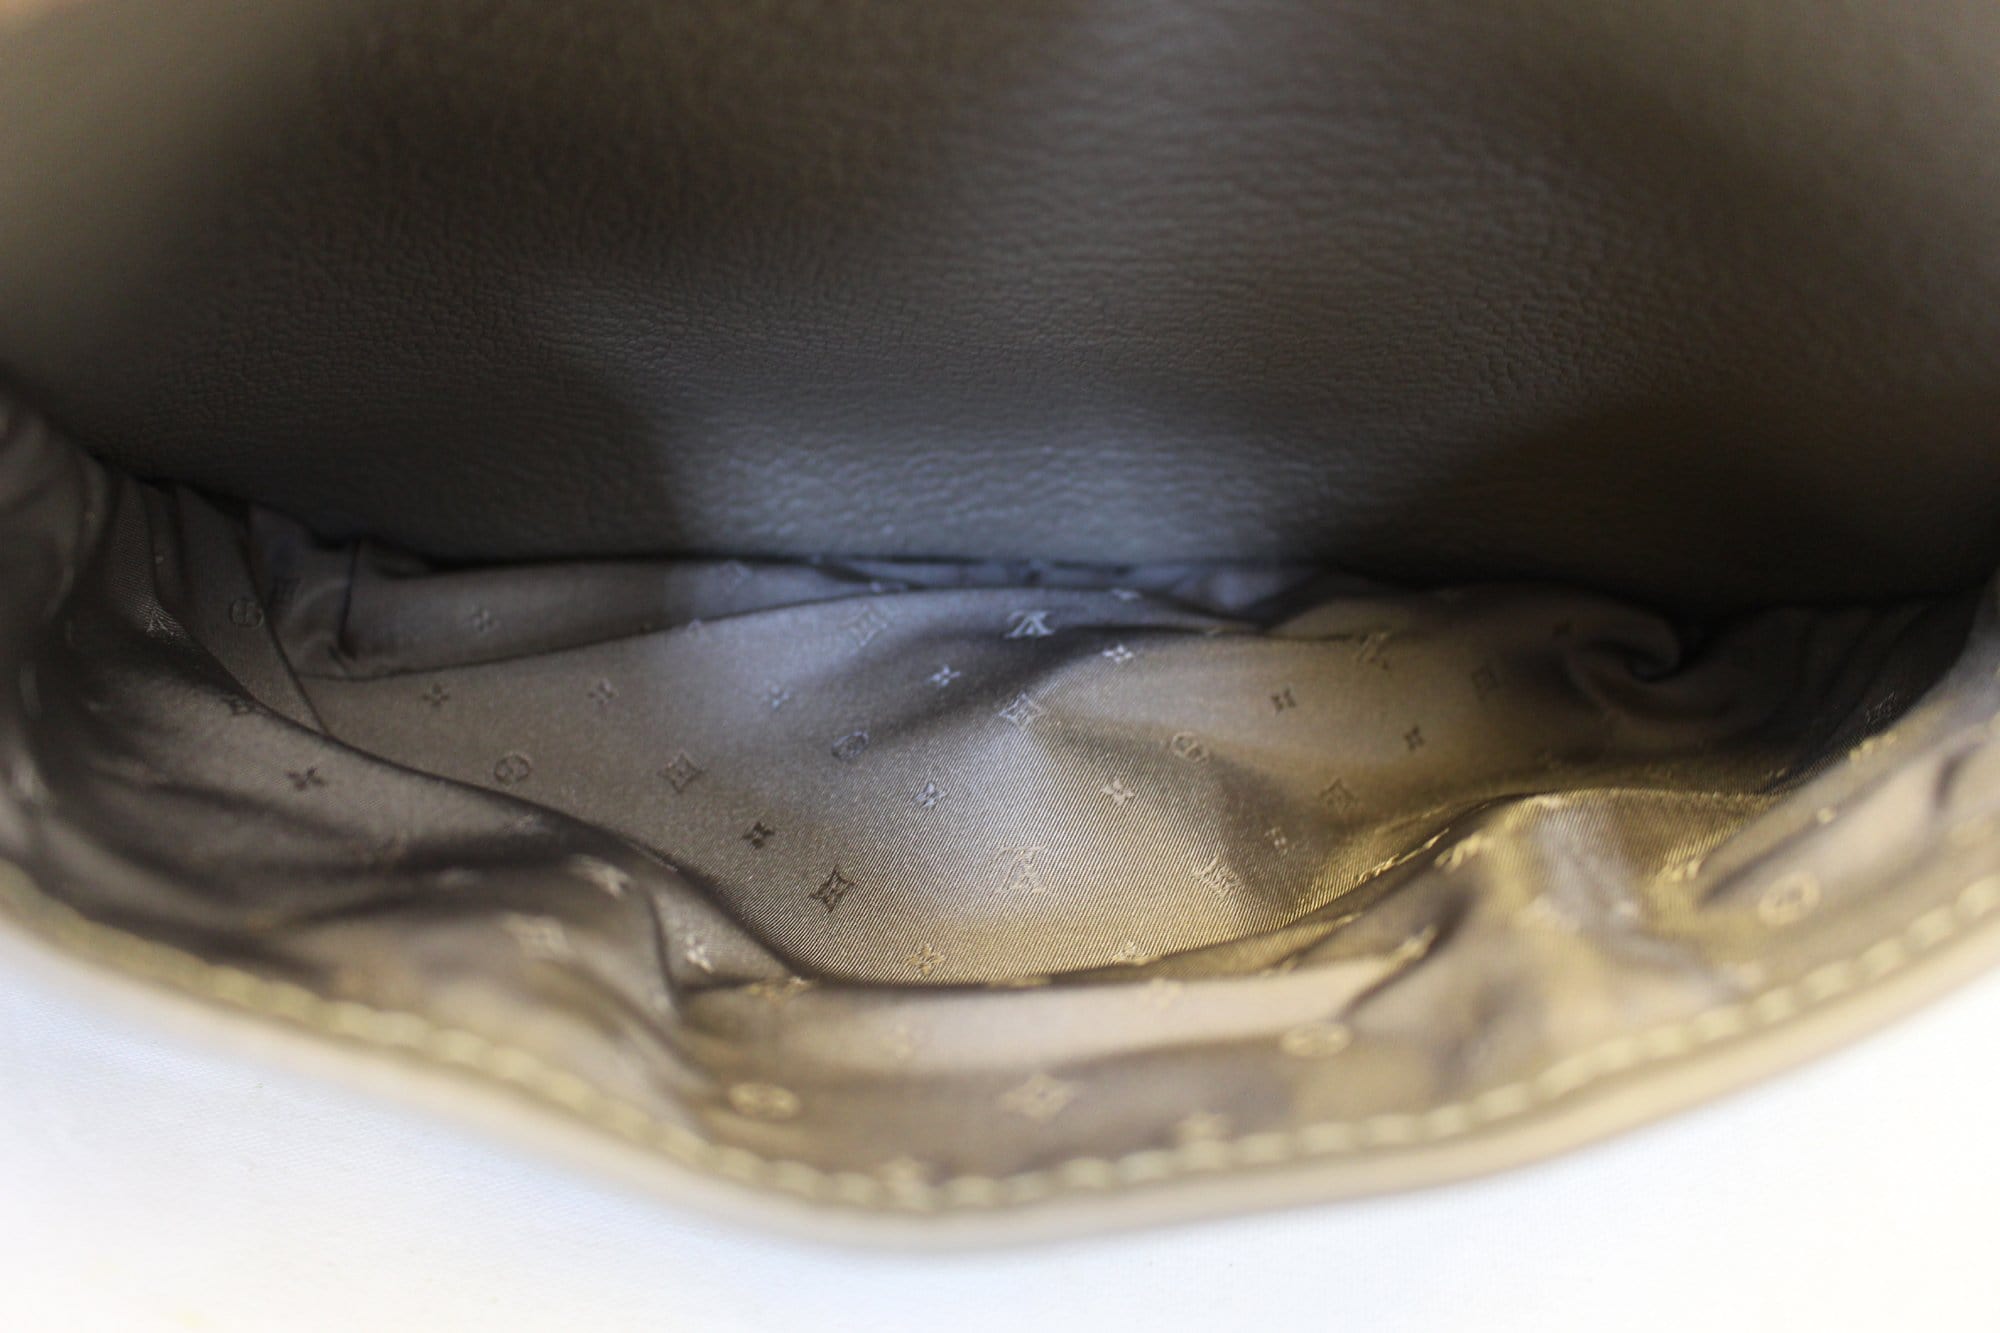 Louis Vuitton Black Suhali Leather Le Confident Bag.  Luxury, Lot  #56228